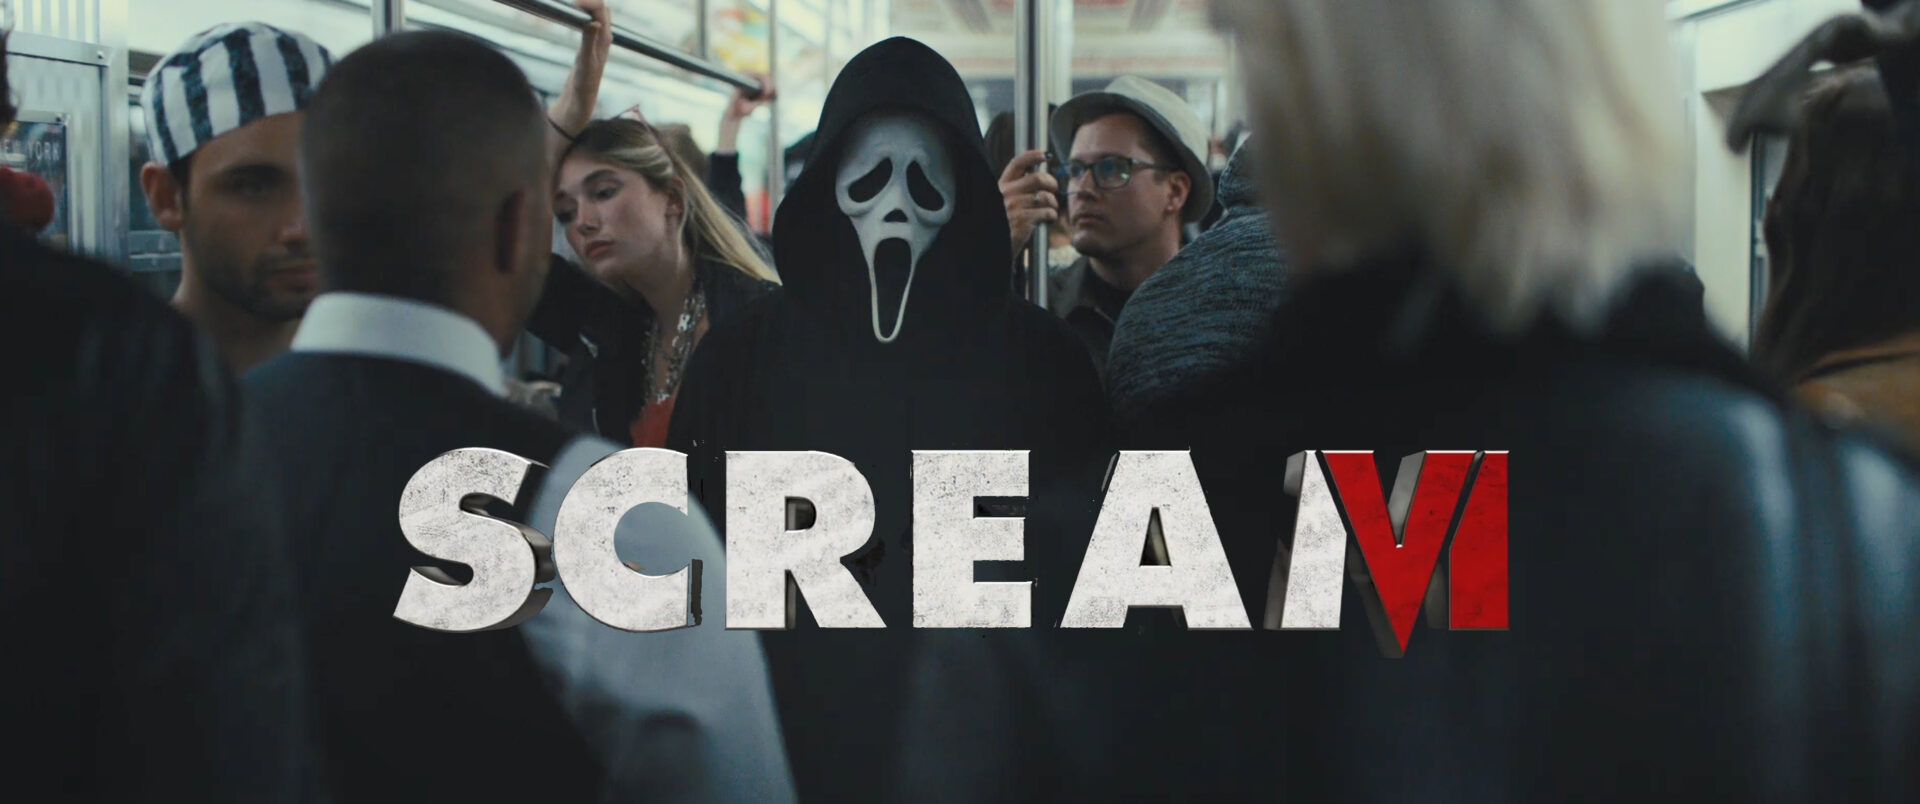 scream 6 teaser trailer 1 banner